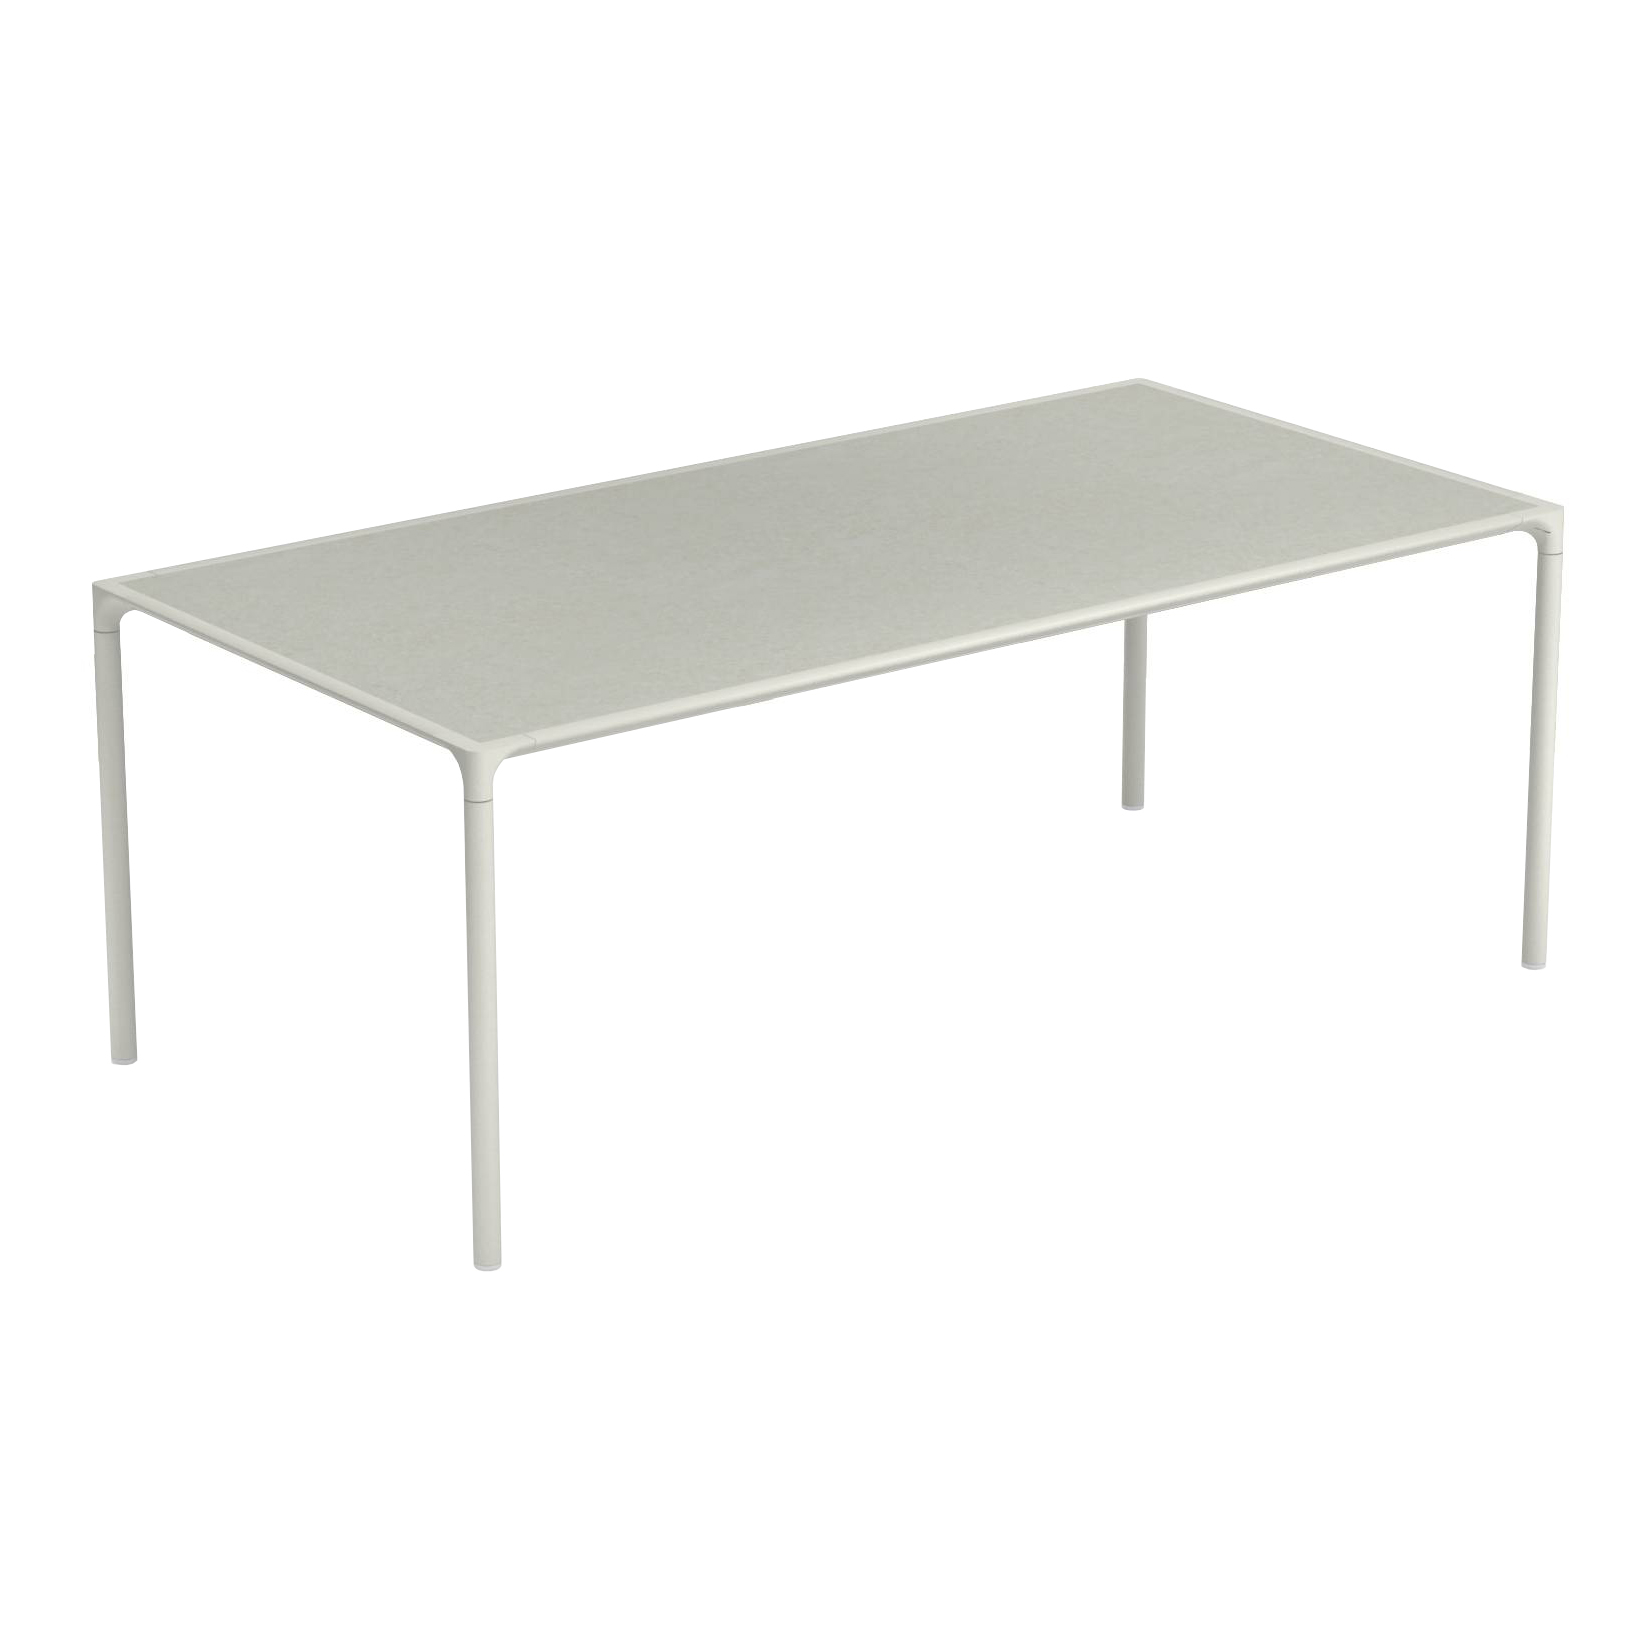 Emu - Terramare Gartenesstisch 203x103cm - grau/Tischplatte Steinzeug/LxBxH 203x103x74cm/Gestell Aluminium weiß von Emu